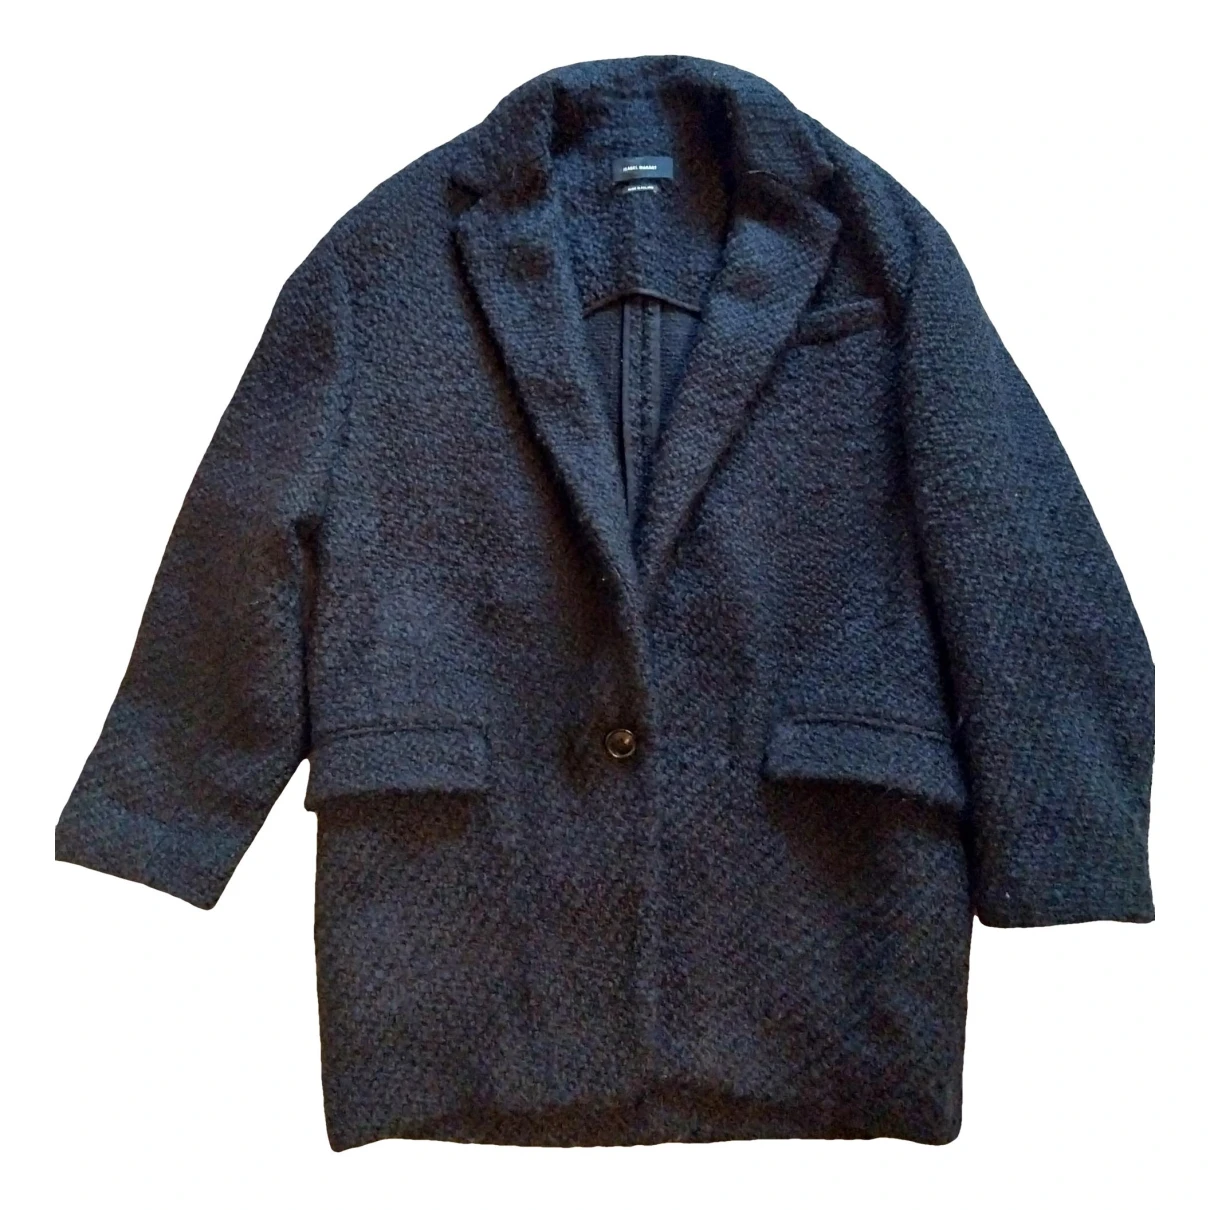 Pre-owned Isabel Marant Wool Coat In Black